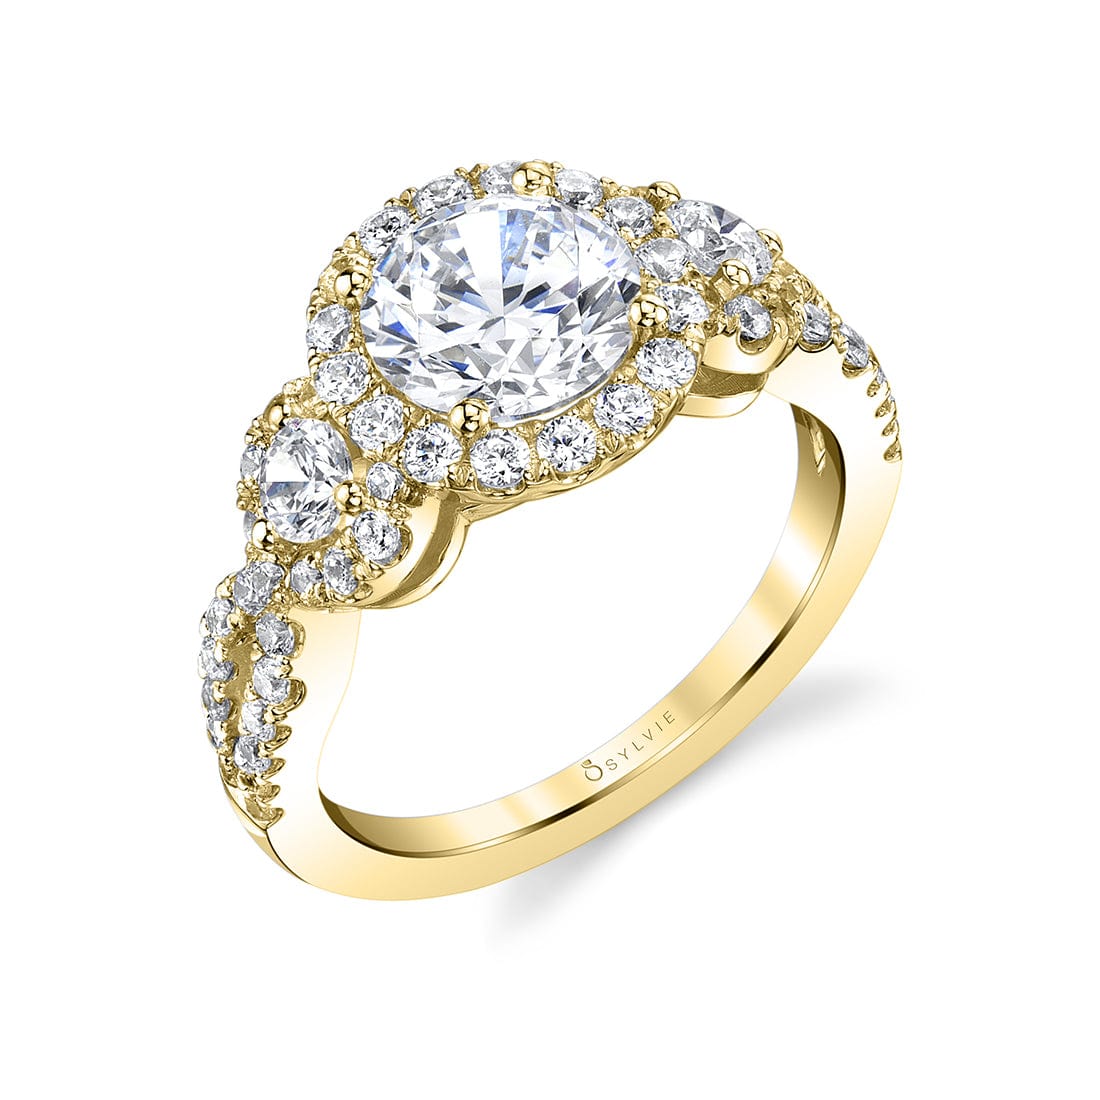 Platinum Vintage Inspired 3 Stone Diamond Halo Engagement Ring Setting